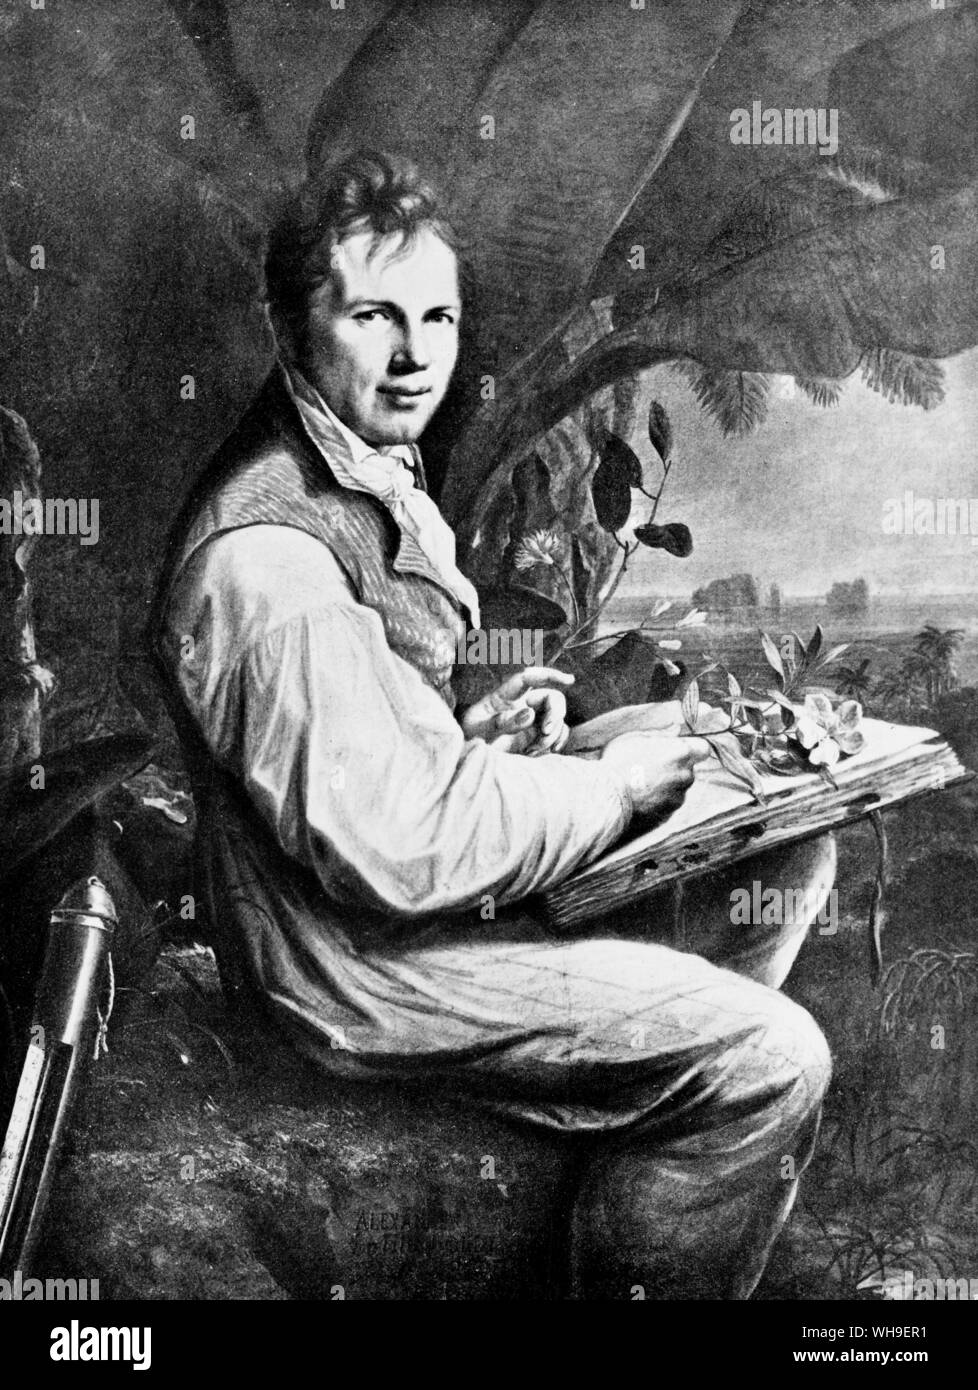 Alexander von Humboldt (1769-1859), German geophysicist, botanist, geologist and writer. Painted in 1806 by .F G. Weitsch. Stock Photo